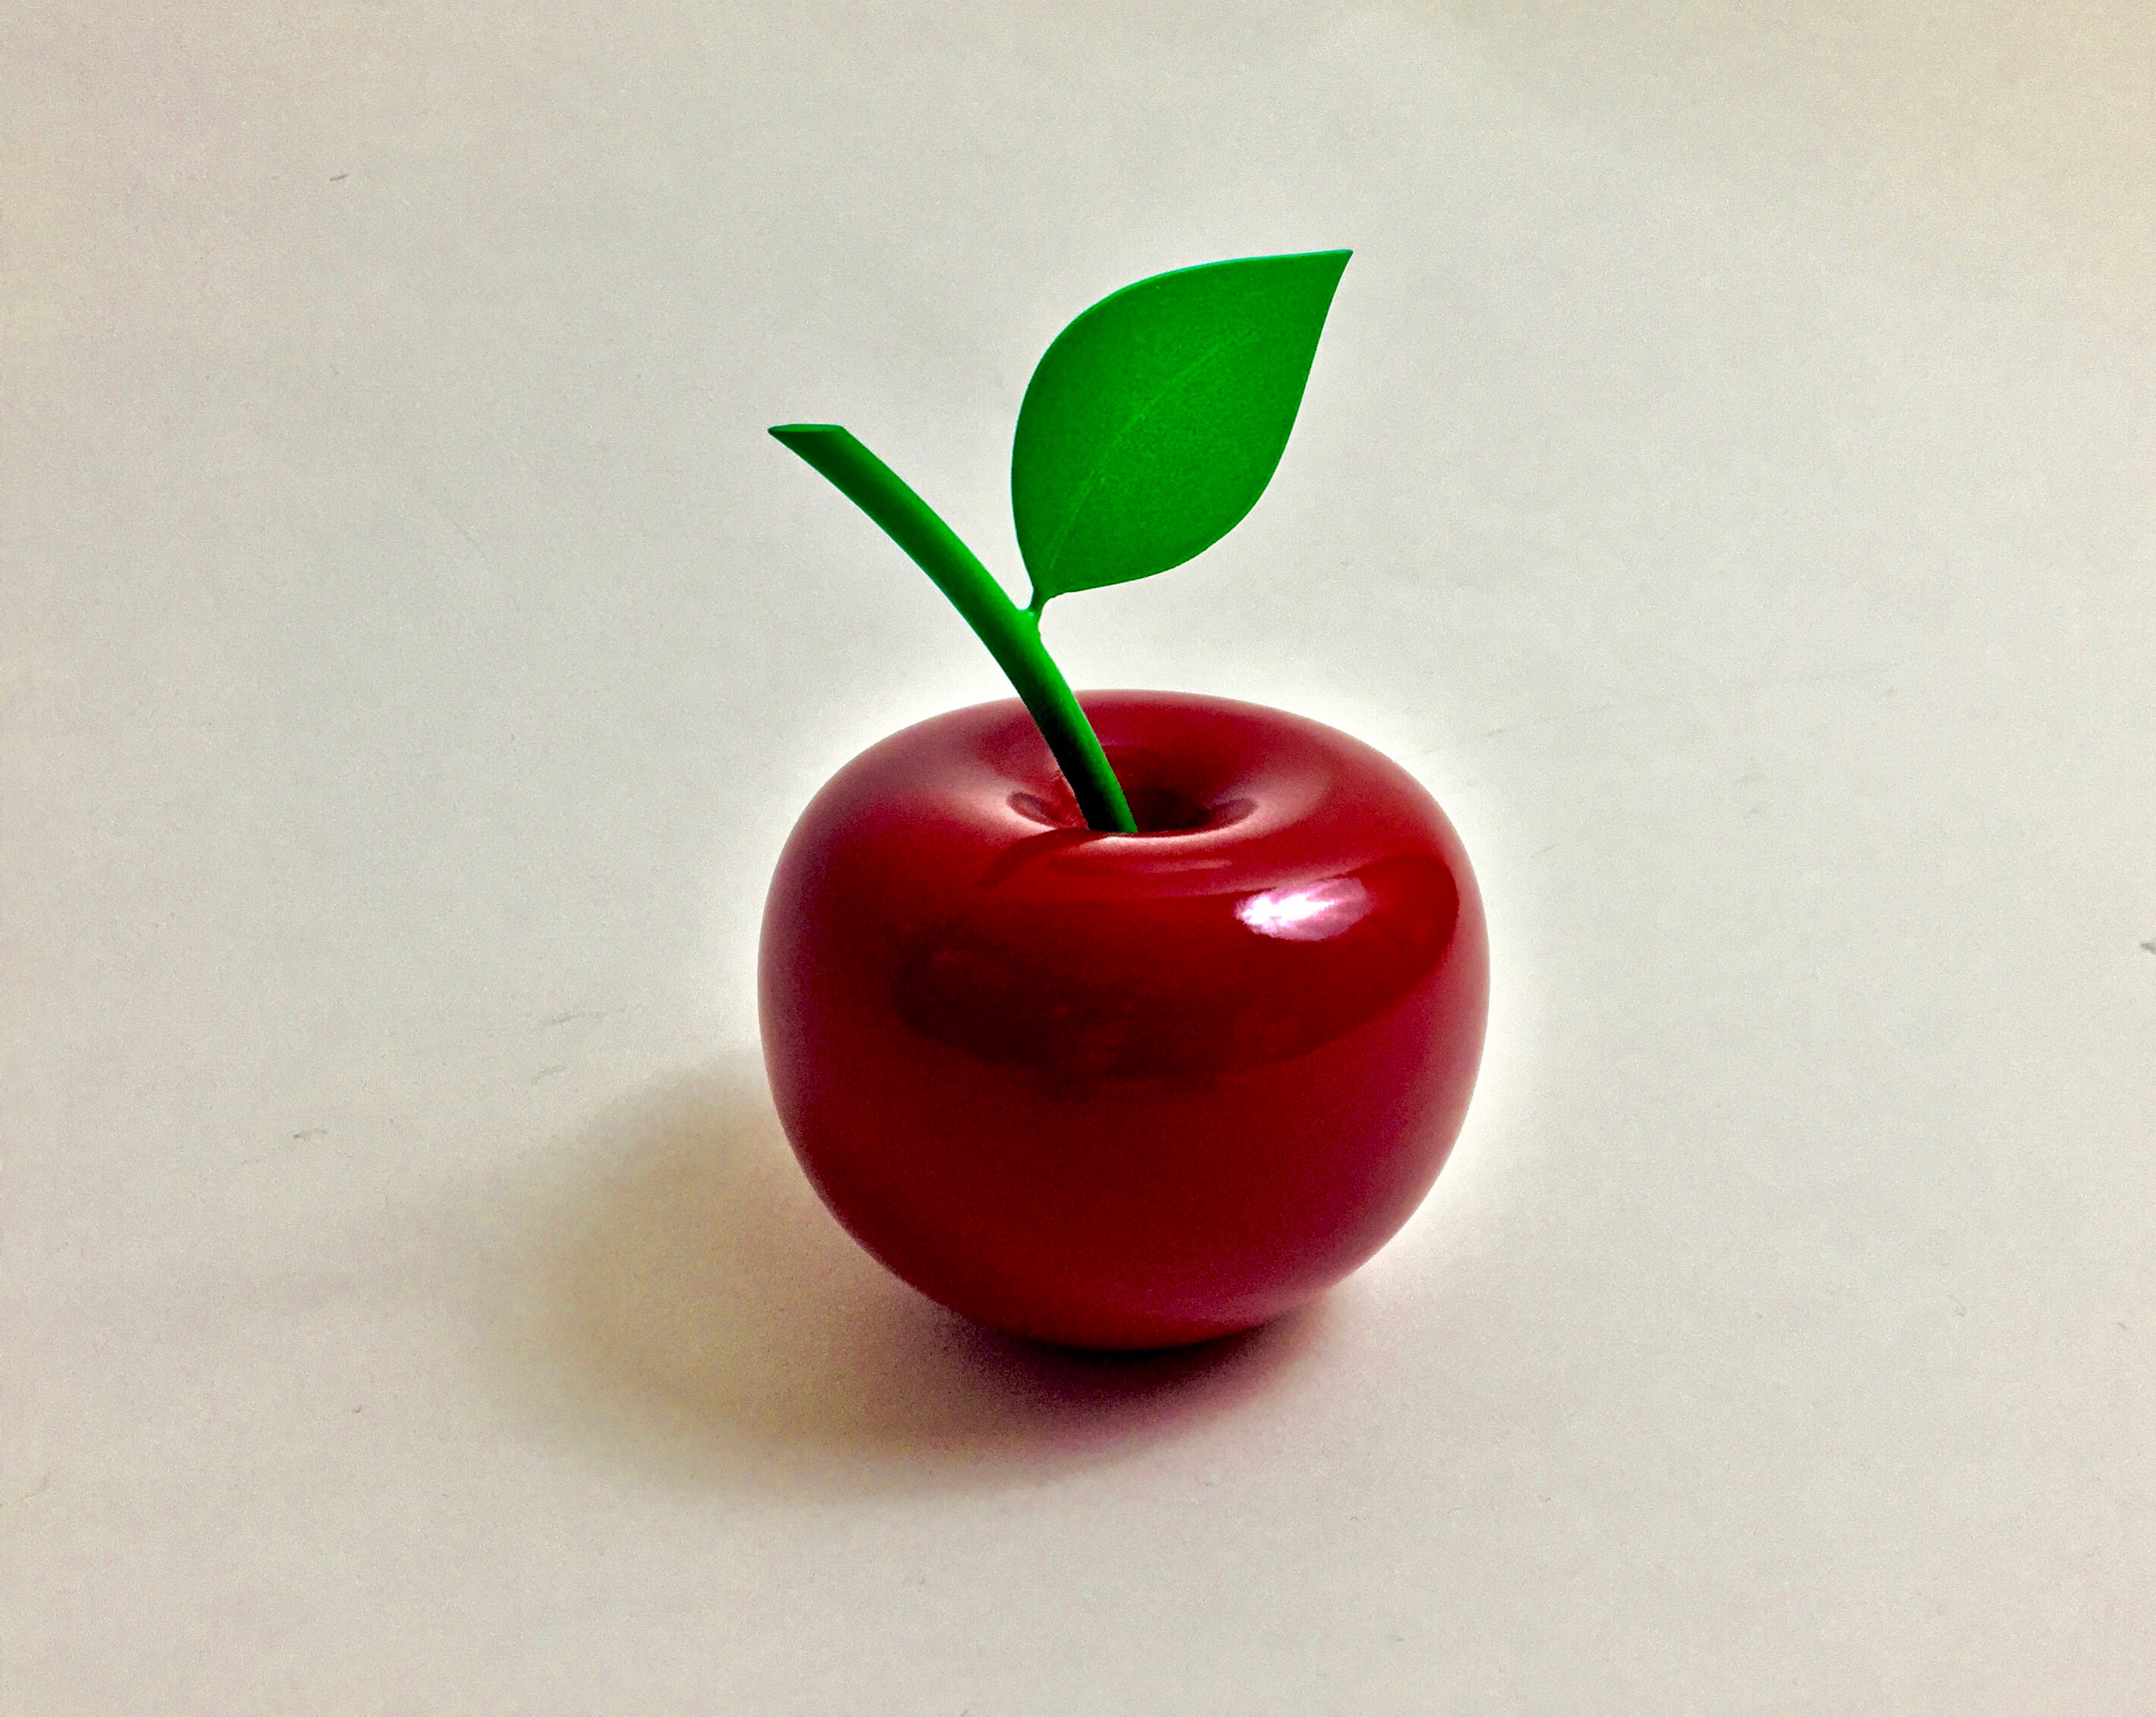 3D Printed Apple